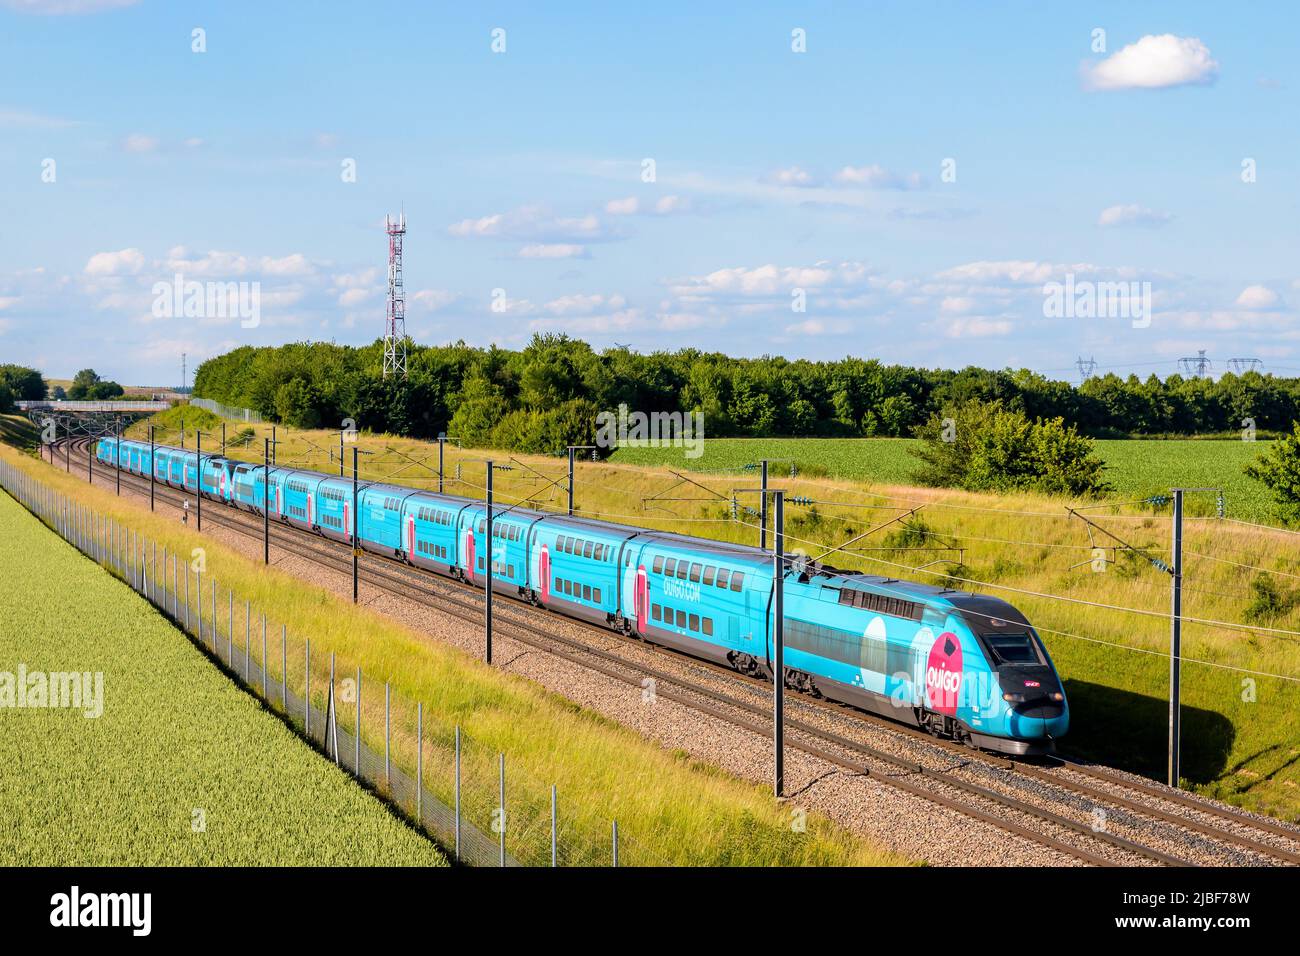 Un tren TGV Duplex Ouigo de alta velocidad de la compañía francesa de trenes SNCF está conduciendo desde París en el LGV Sud-Est en el campo. Foto de stock